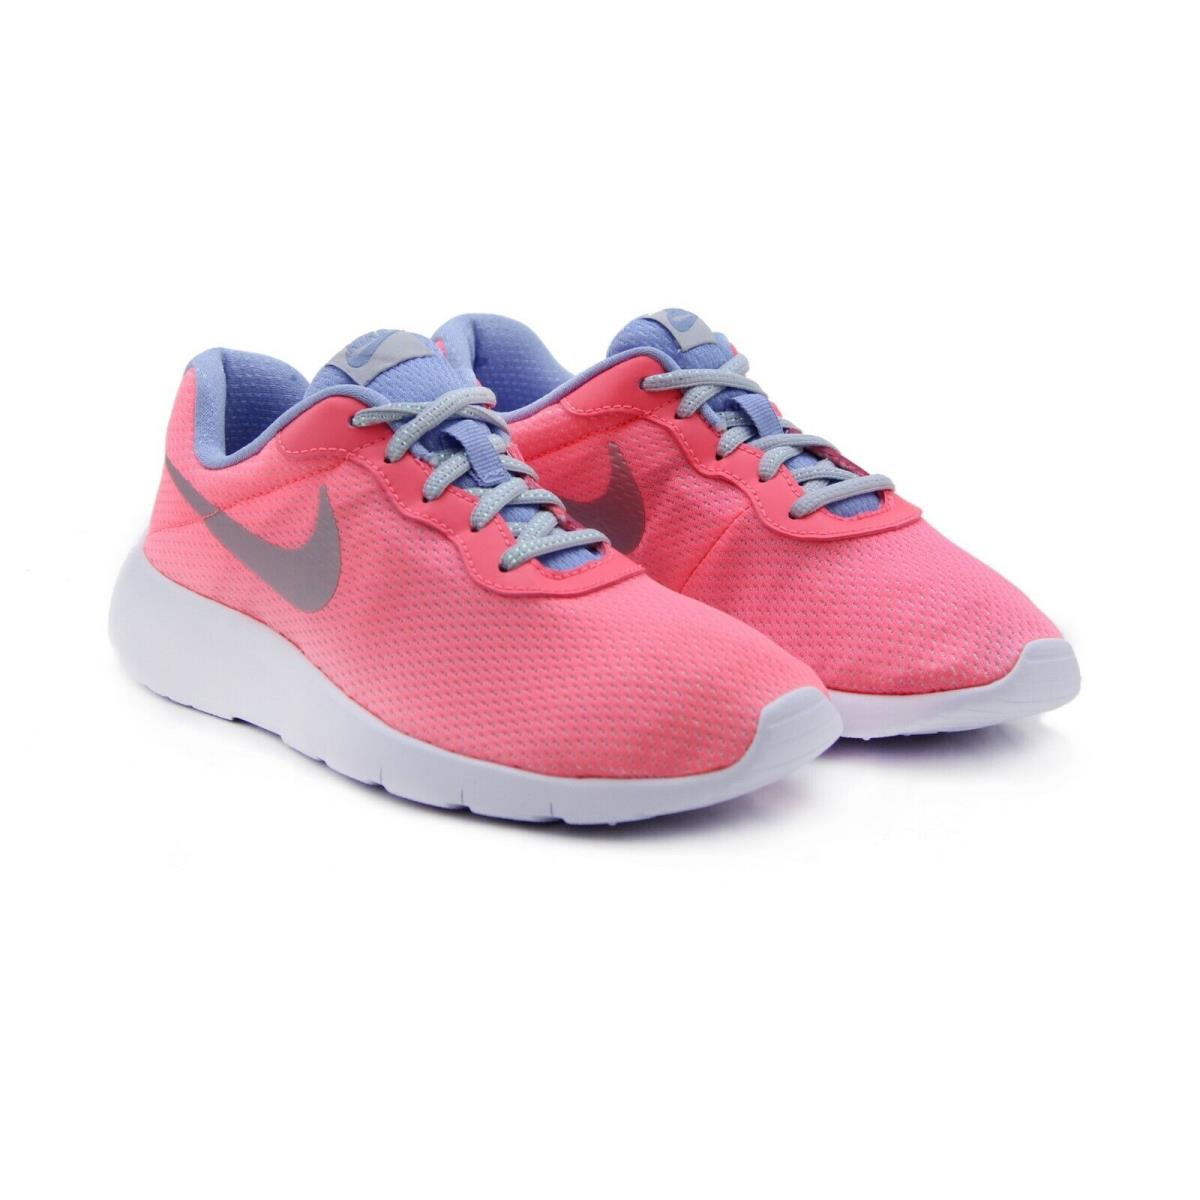 Nike Tanjun SE GS Youth Size: 5.5 Running Shoes 859617-600 Big Kid`s - Pink